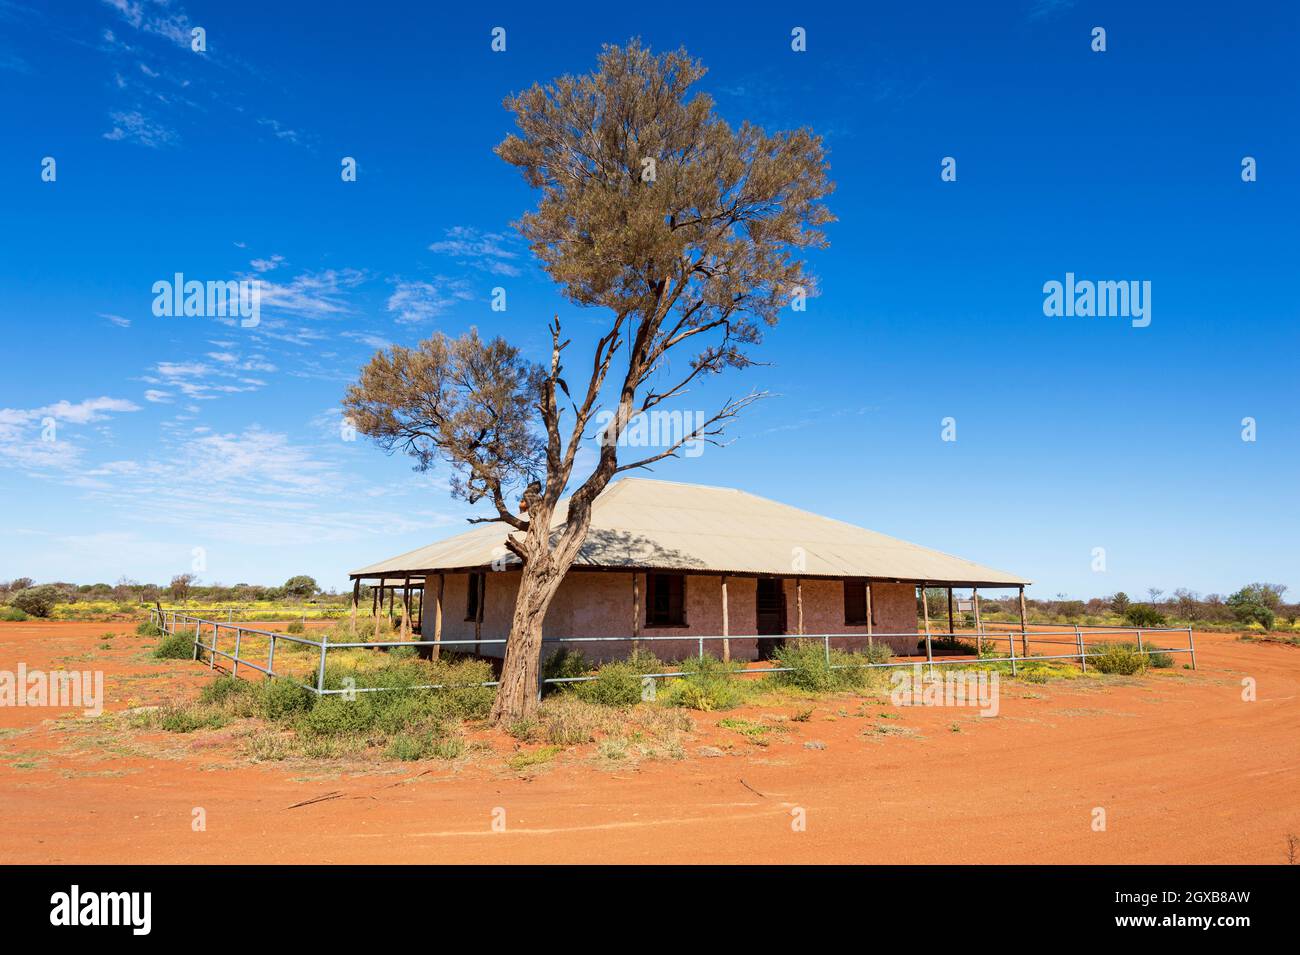 L'ancien poste de police et le locklock de Mt Gould est une attraction touristique populaire dans l'Outback, Meekatharra Shire, Australie occidentale, Australie occidentale, Australie occidentale Banque D'Images